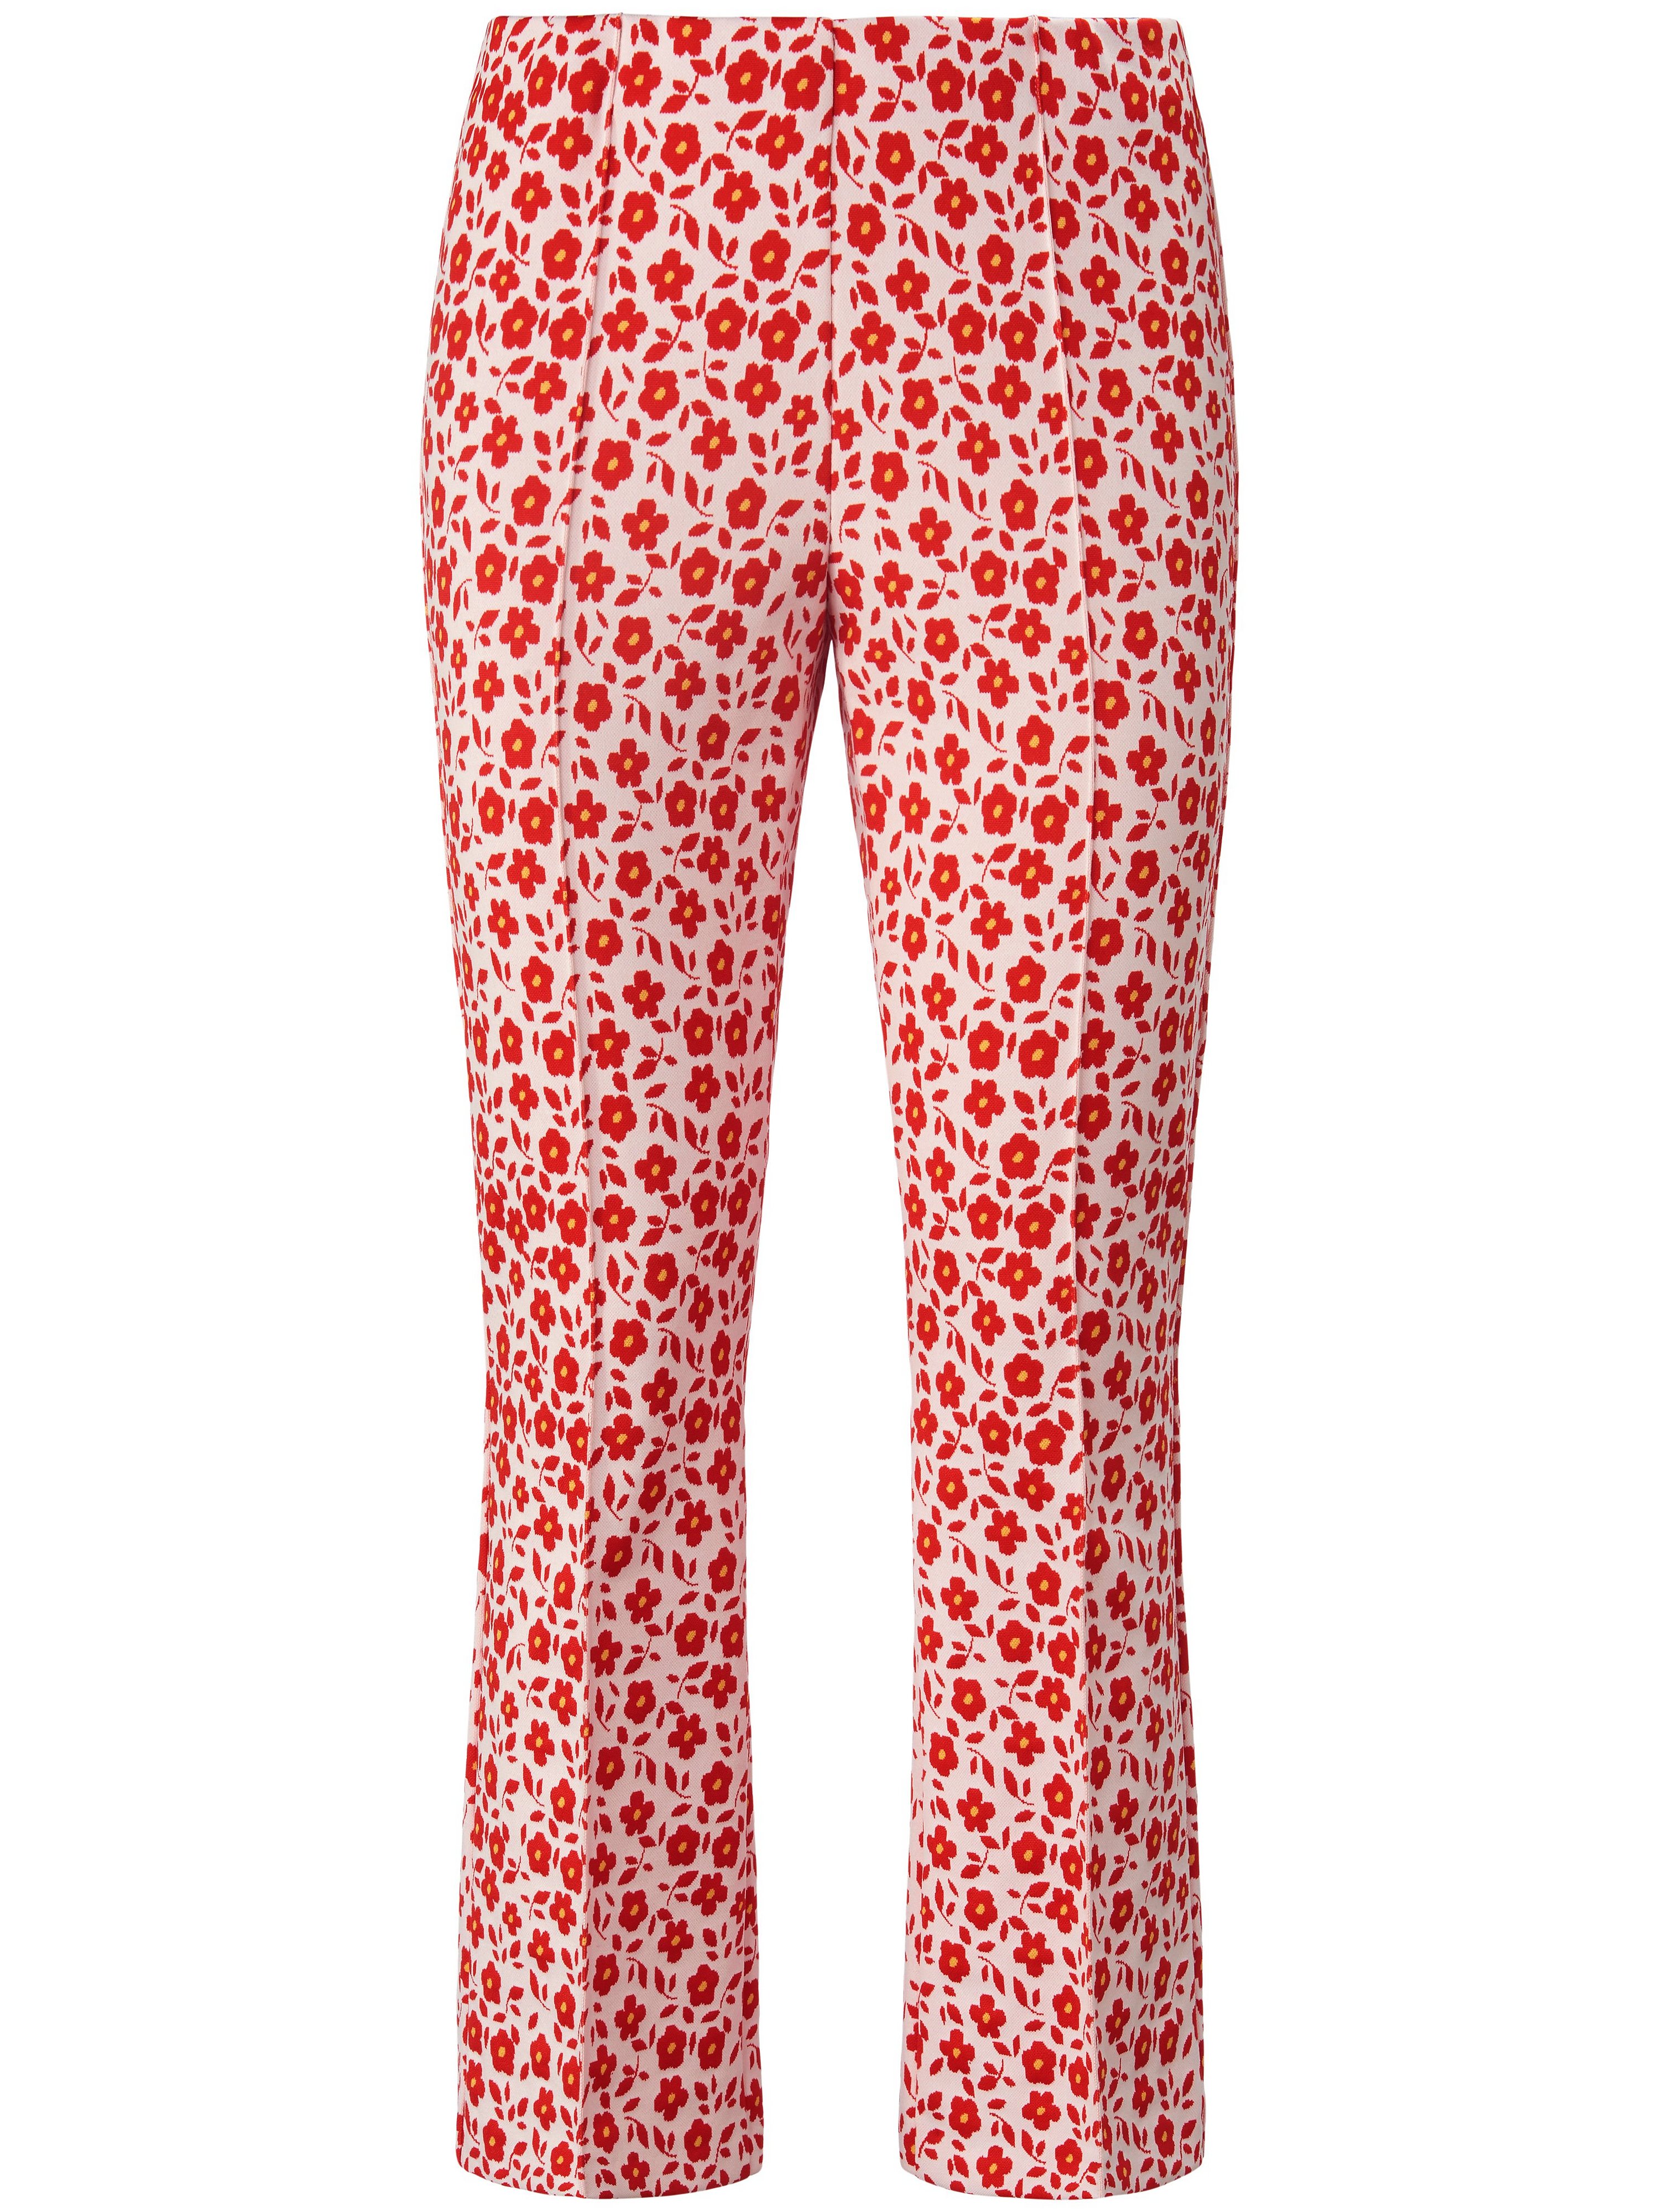 Le pantalon 7/8 Slim Fit  gardeur rouge